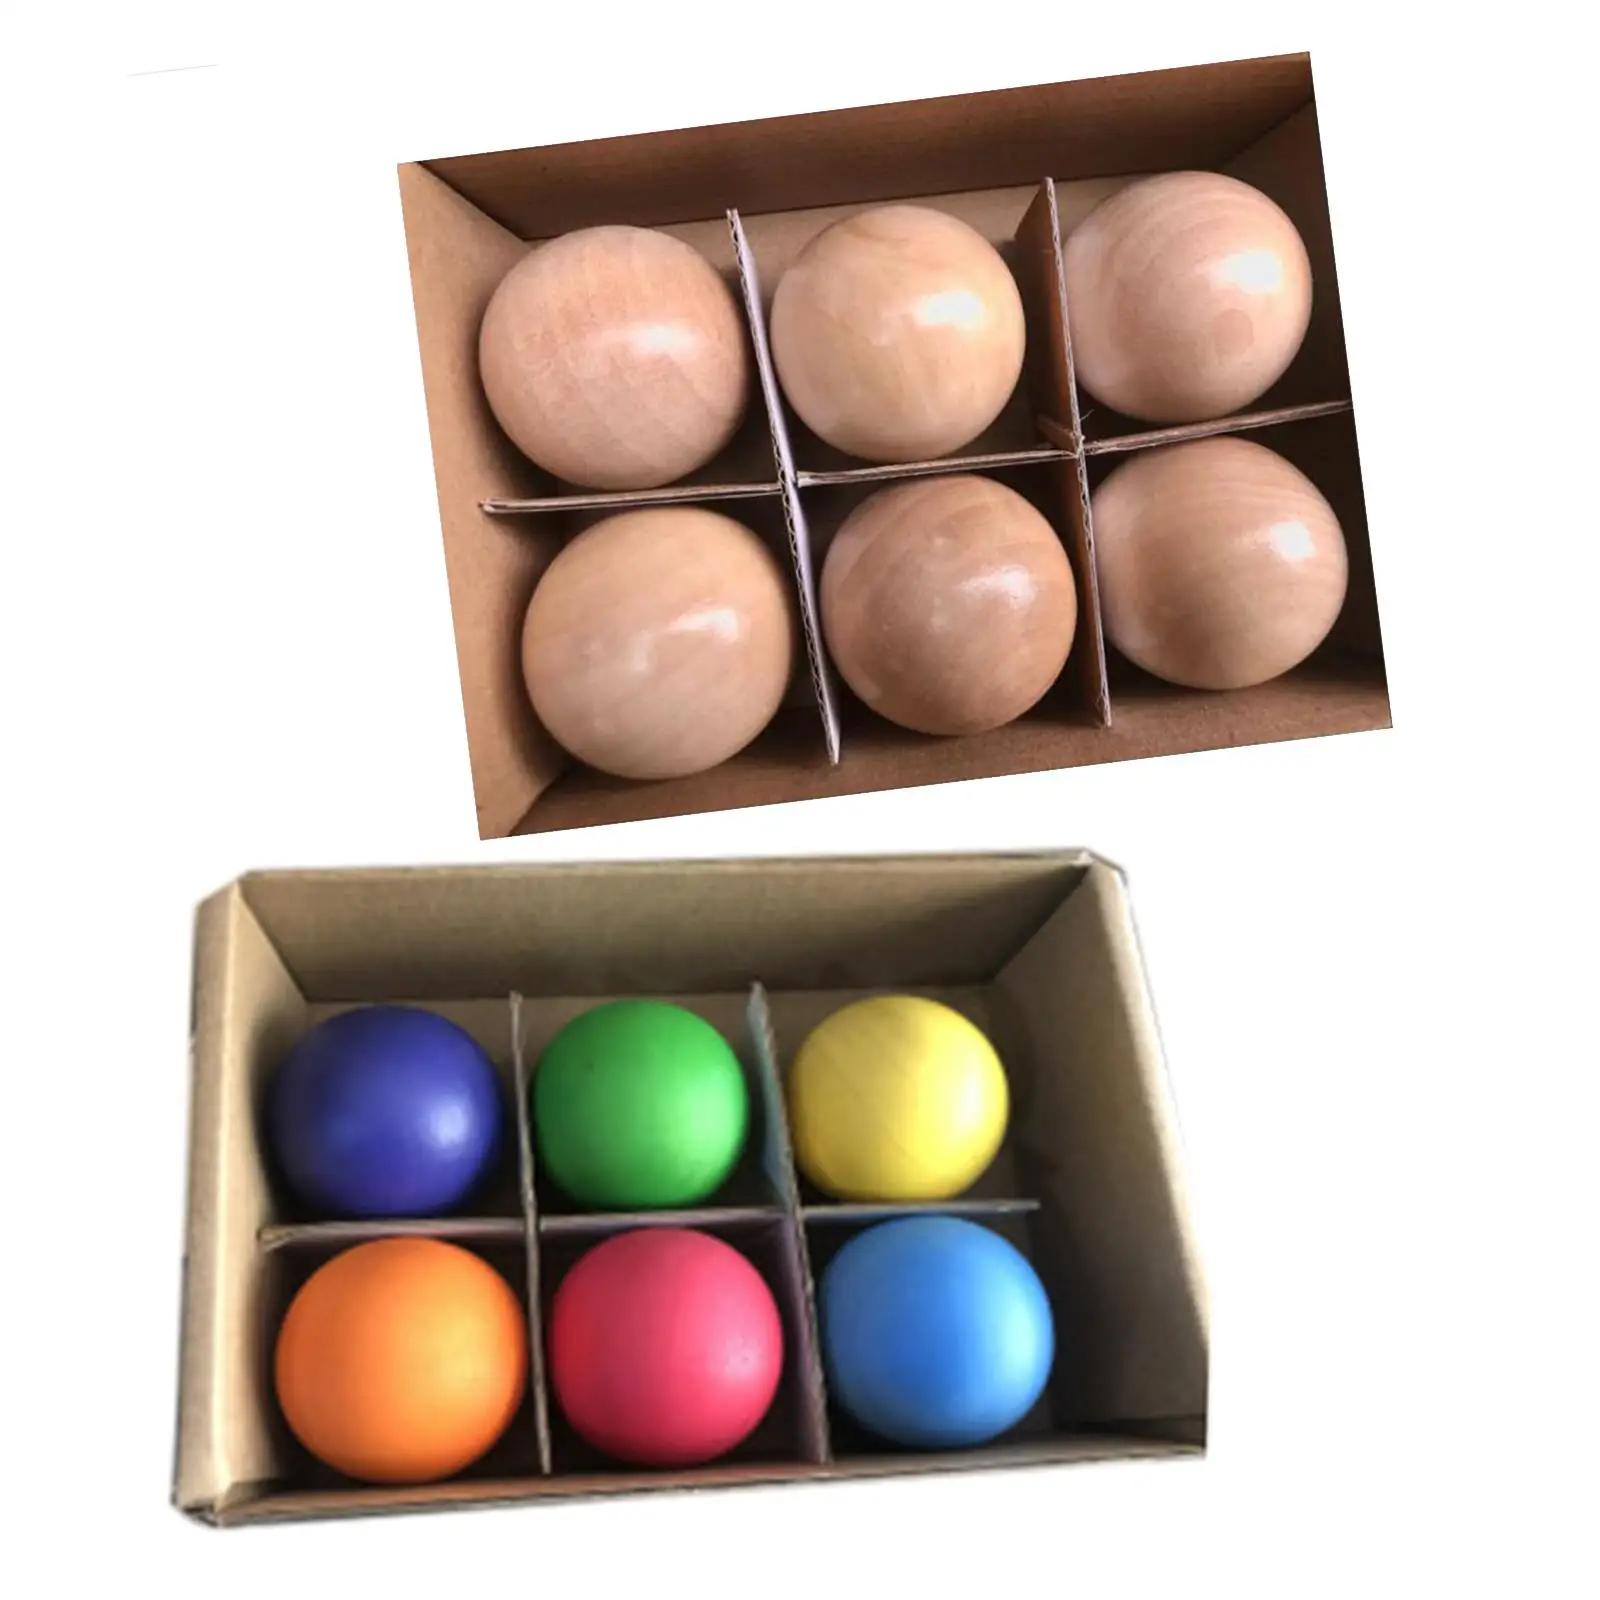 

Игрушки Монтессори 6x1,8 дюйма, деревянные шарики, обучающий материал для шариков, моторики, зрительно-моторической координации рук, творчество